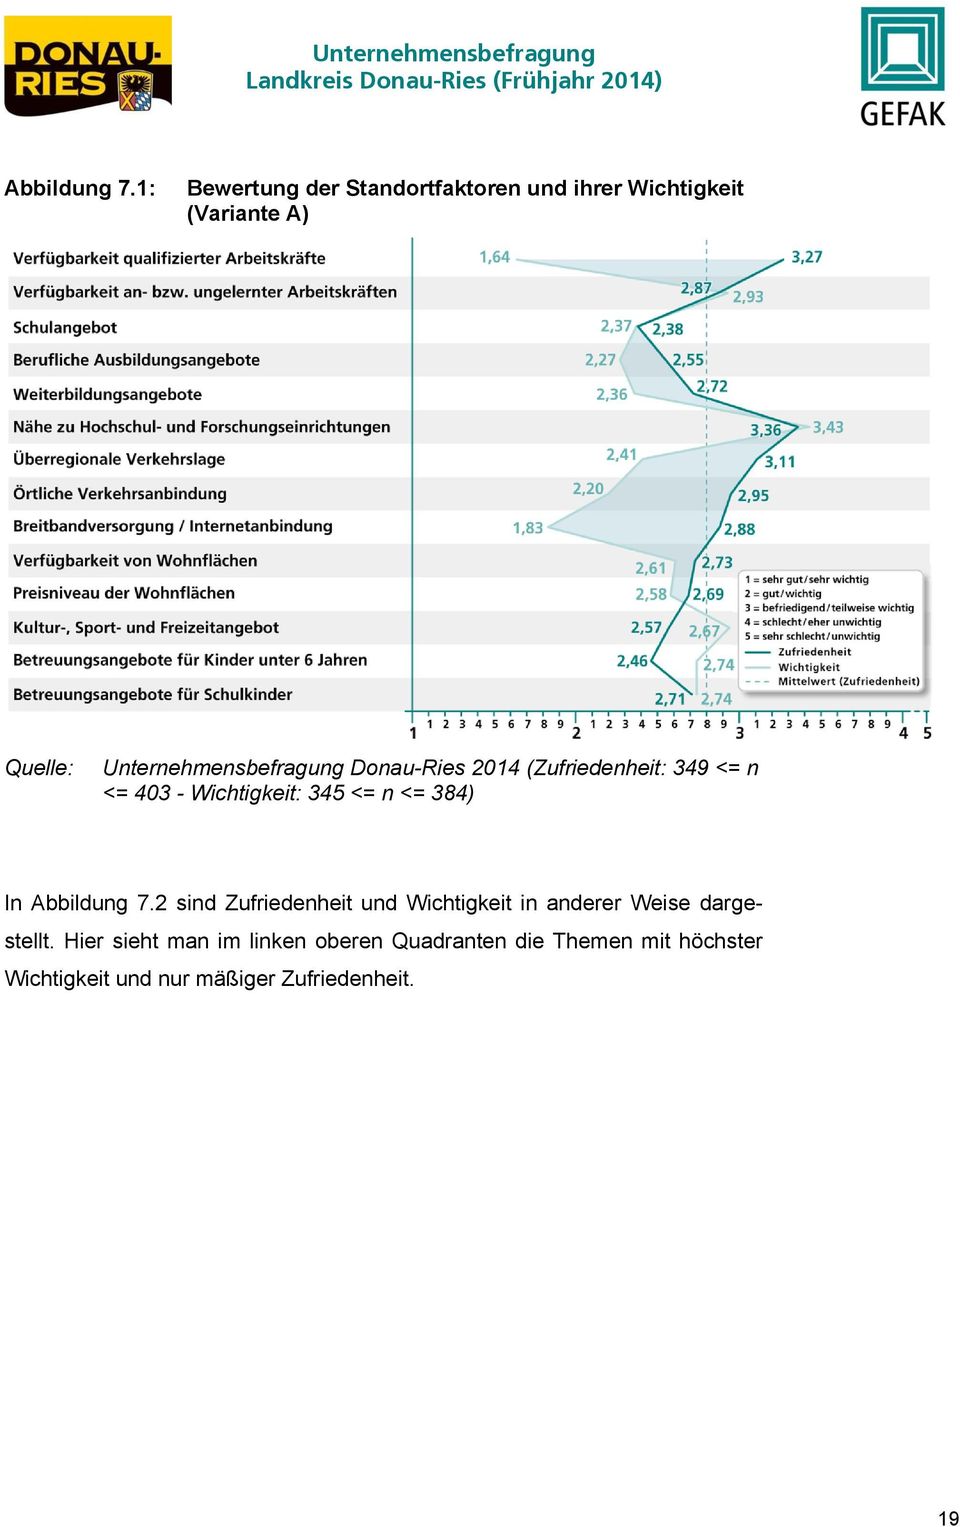 Unternehmensbefragung Donau-Ries 2014 (Zufriedenheit: 349 <= n <= 403 - Wichtigkeit: 345 <= n <=